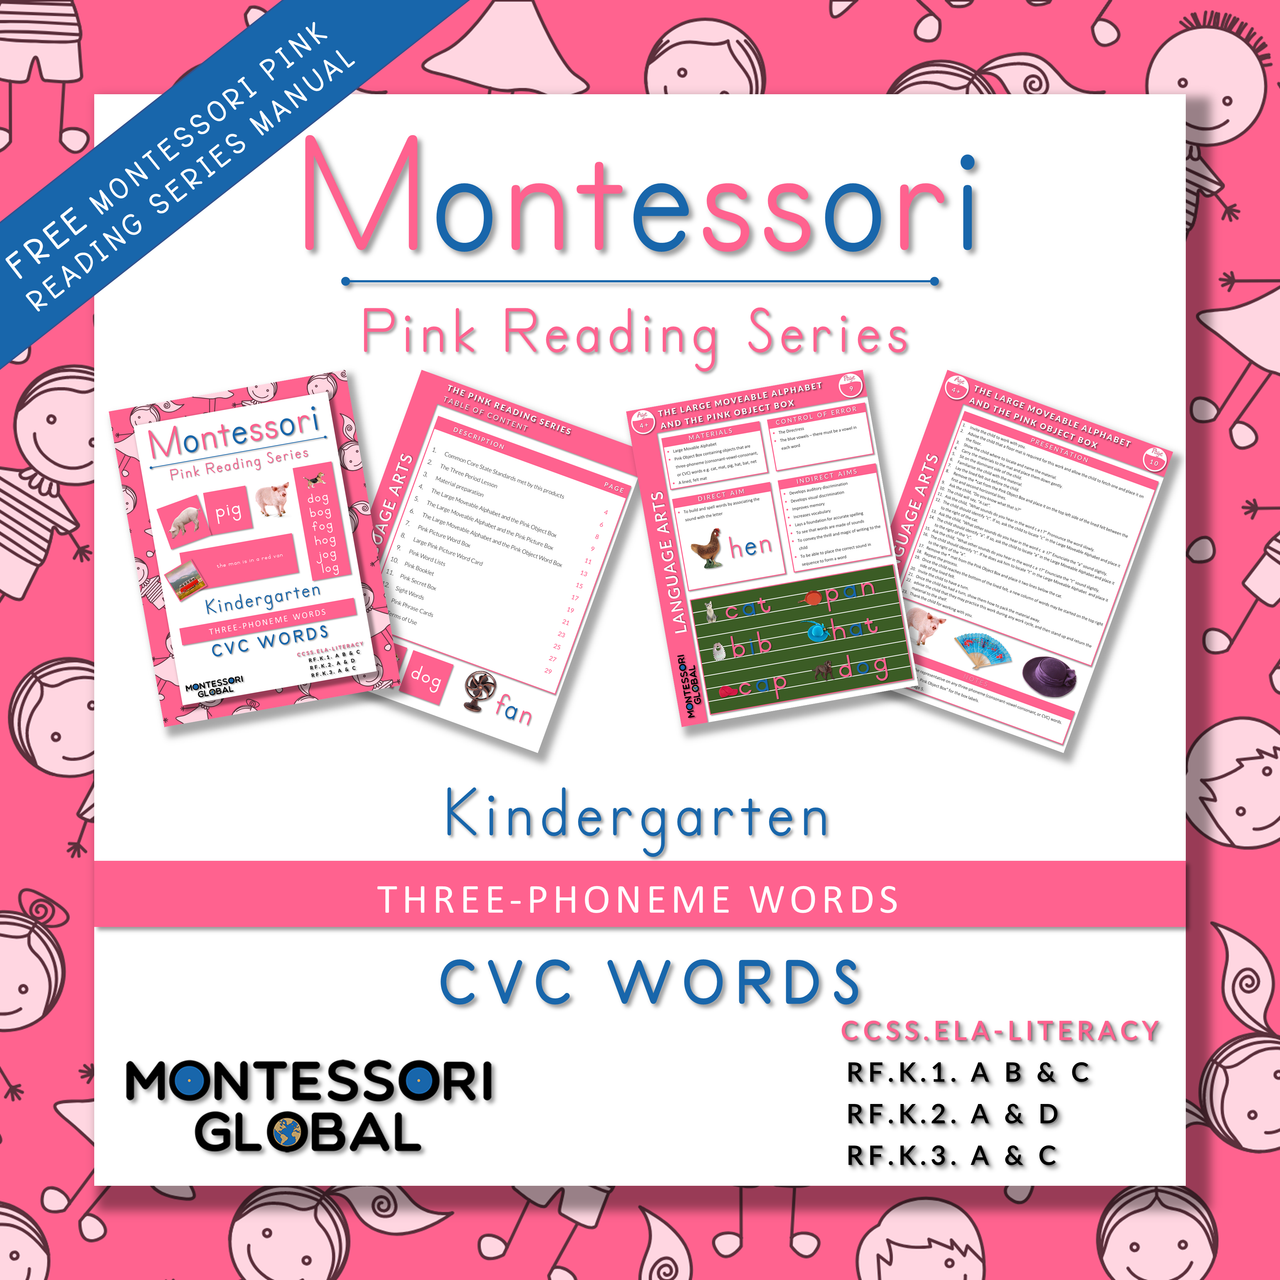 Montessori Pink Reading Series Teaching Manual